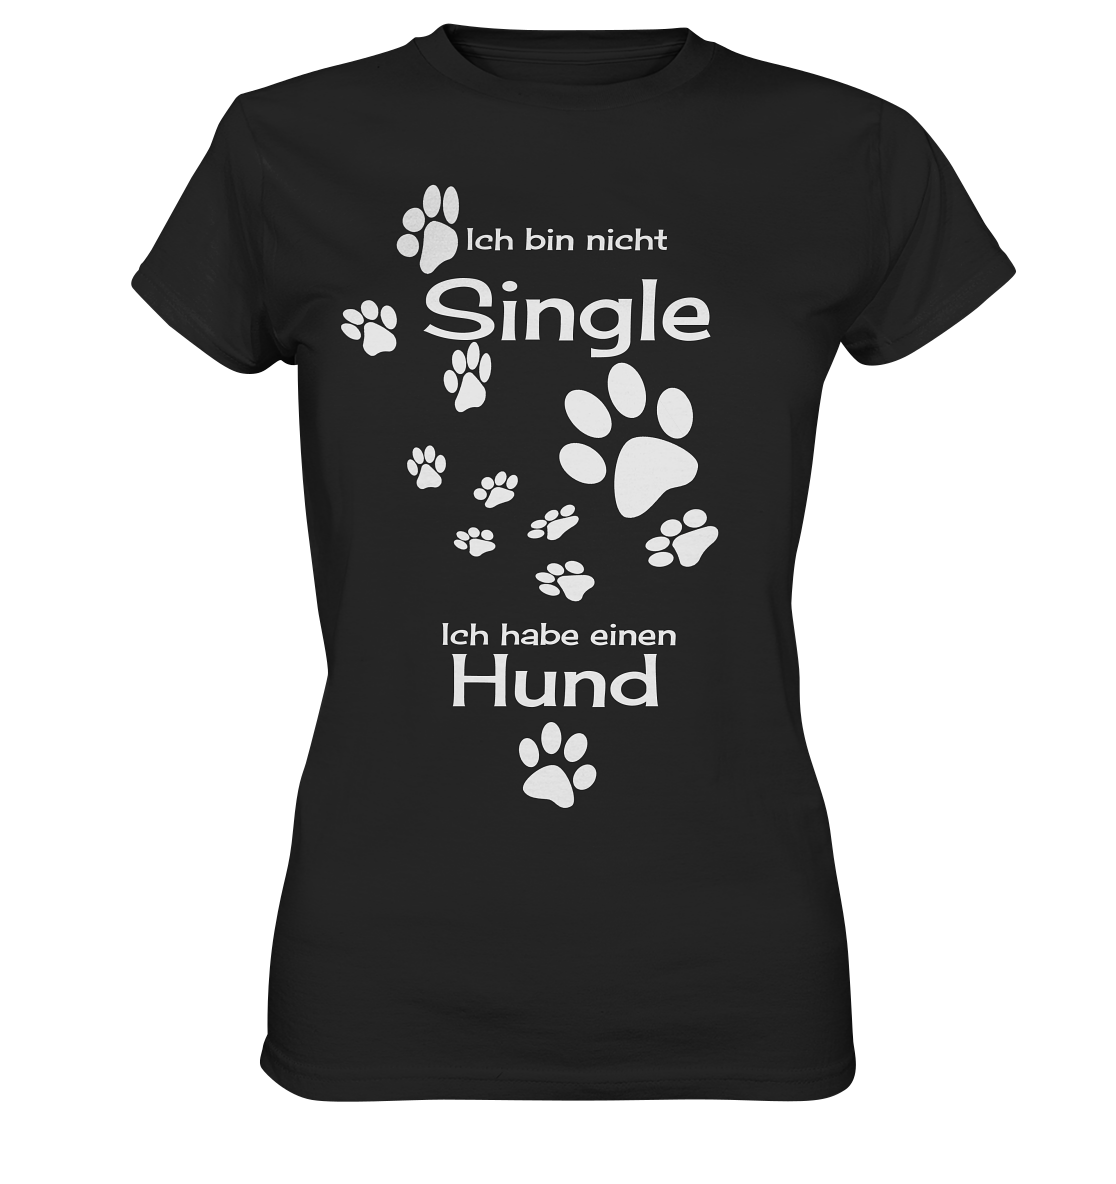 Ich bin nicht Single. Ich habe einen Hund - Ladies Premium Shirt